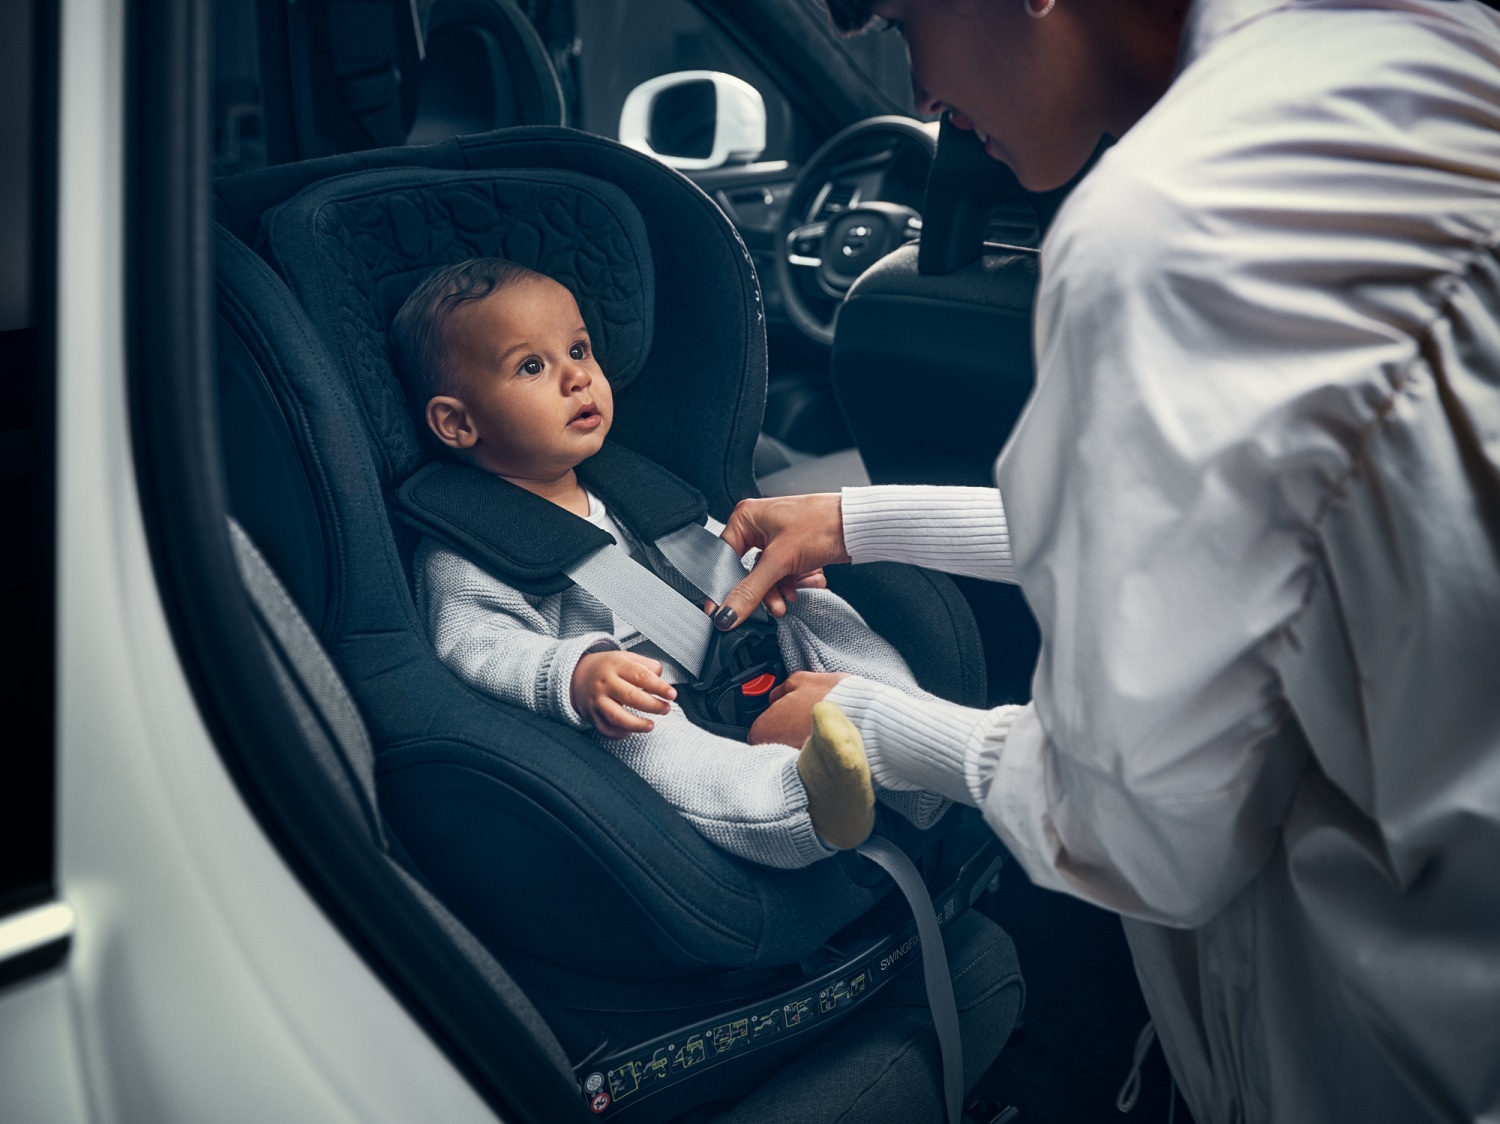 امرأة تربط الحزام لطفل لتثبيته بمقعد السيارة.